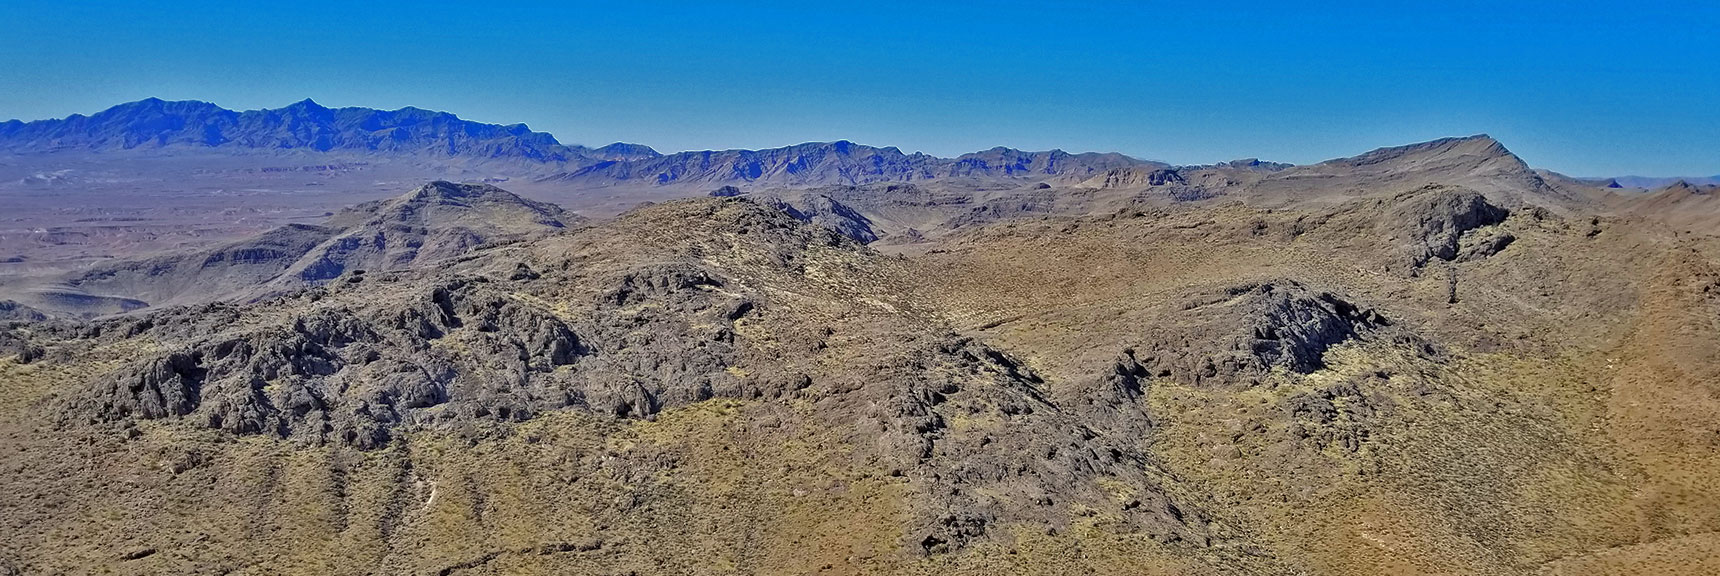 Northwestern Overlook | Muddy Mountains Wilderness, Nevada